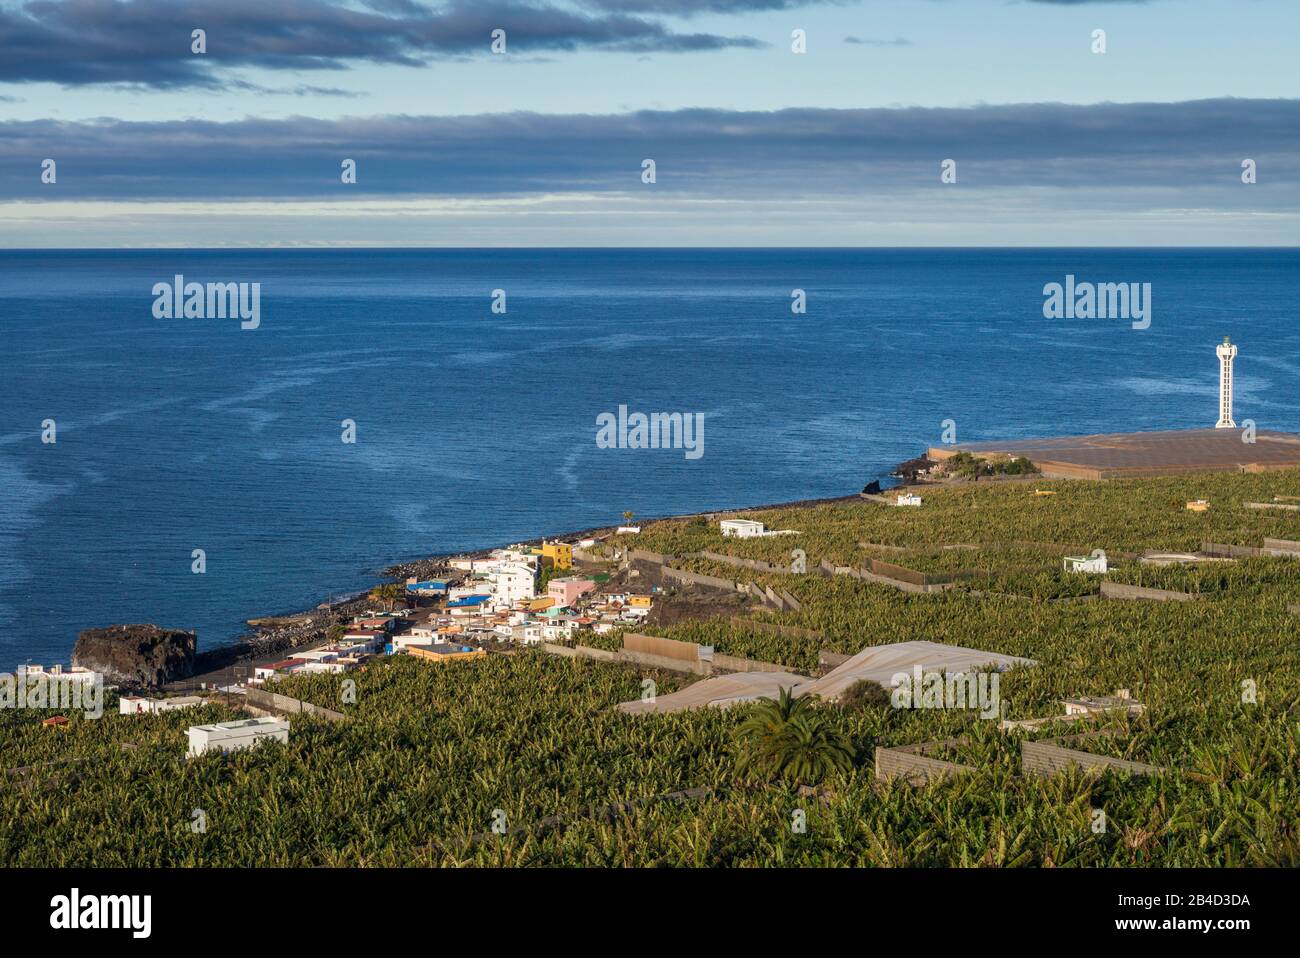 Spain, Canary Islands, La Palma Island, La Bombilla, elevated viallge view with banana plantation Stock Photo